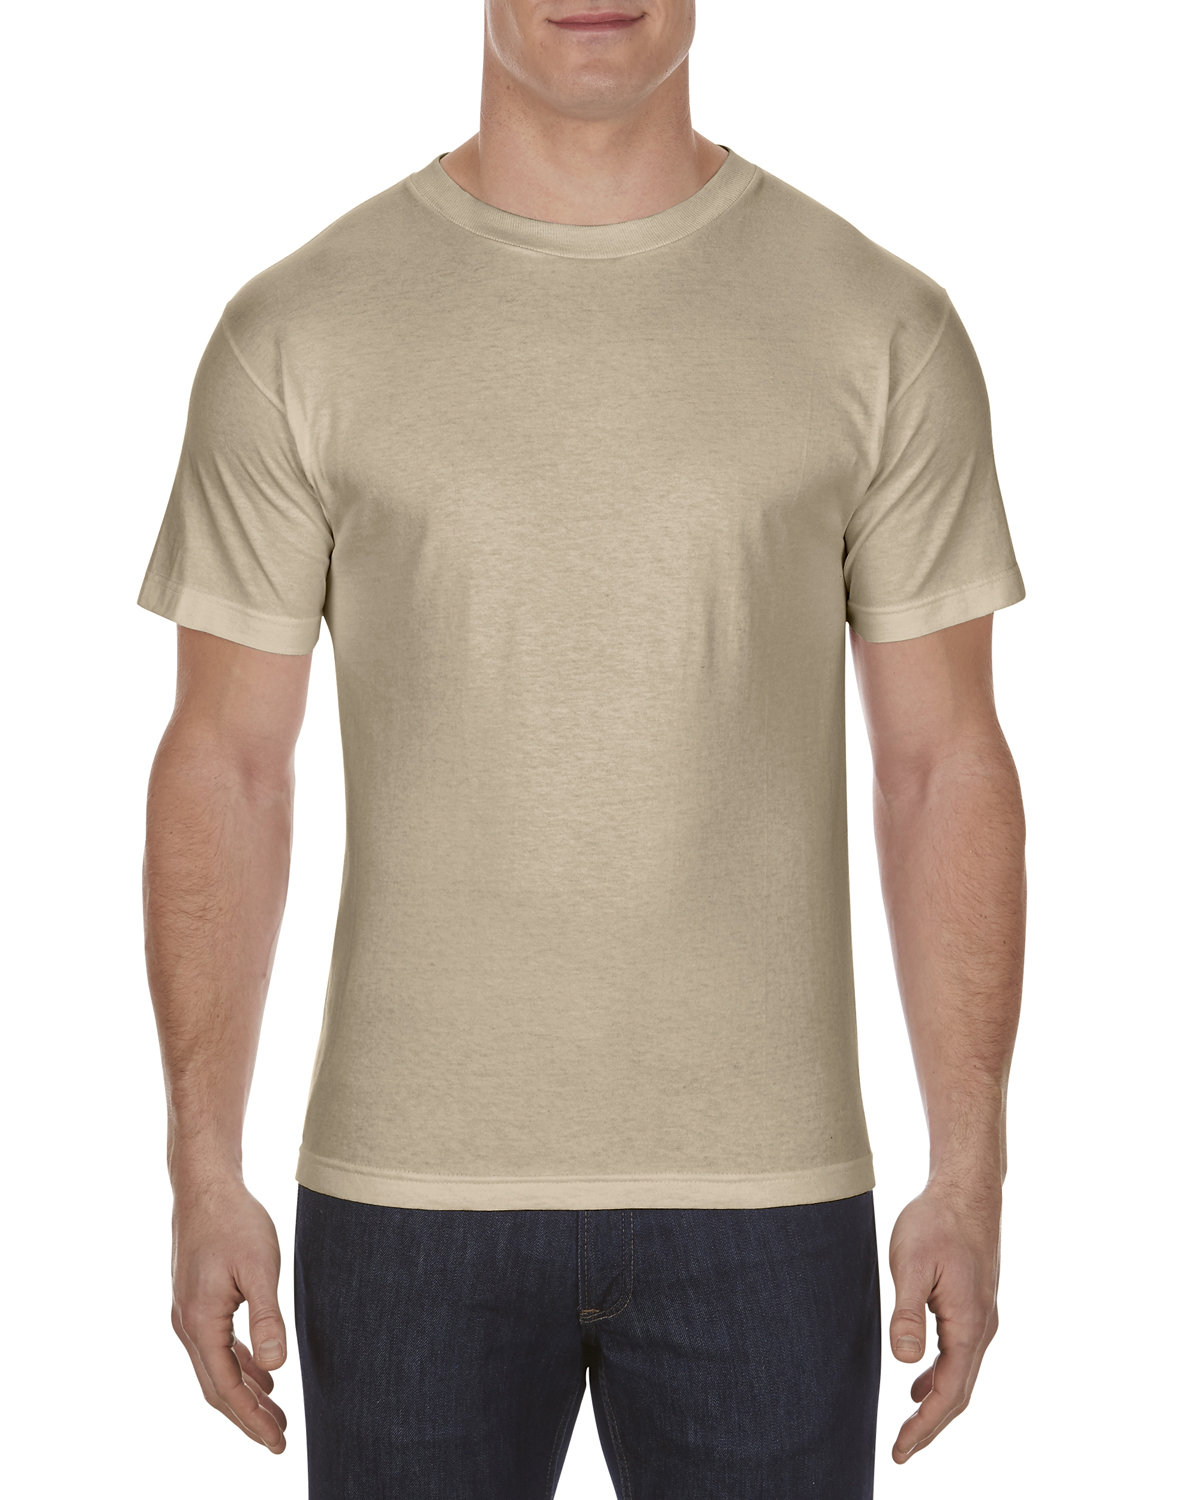 Alstyle Adult 6.0 oz., 100% Cotton T-Shirt SAND 